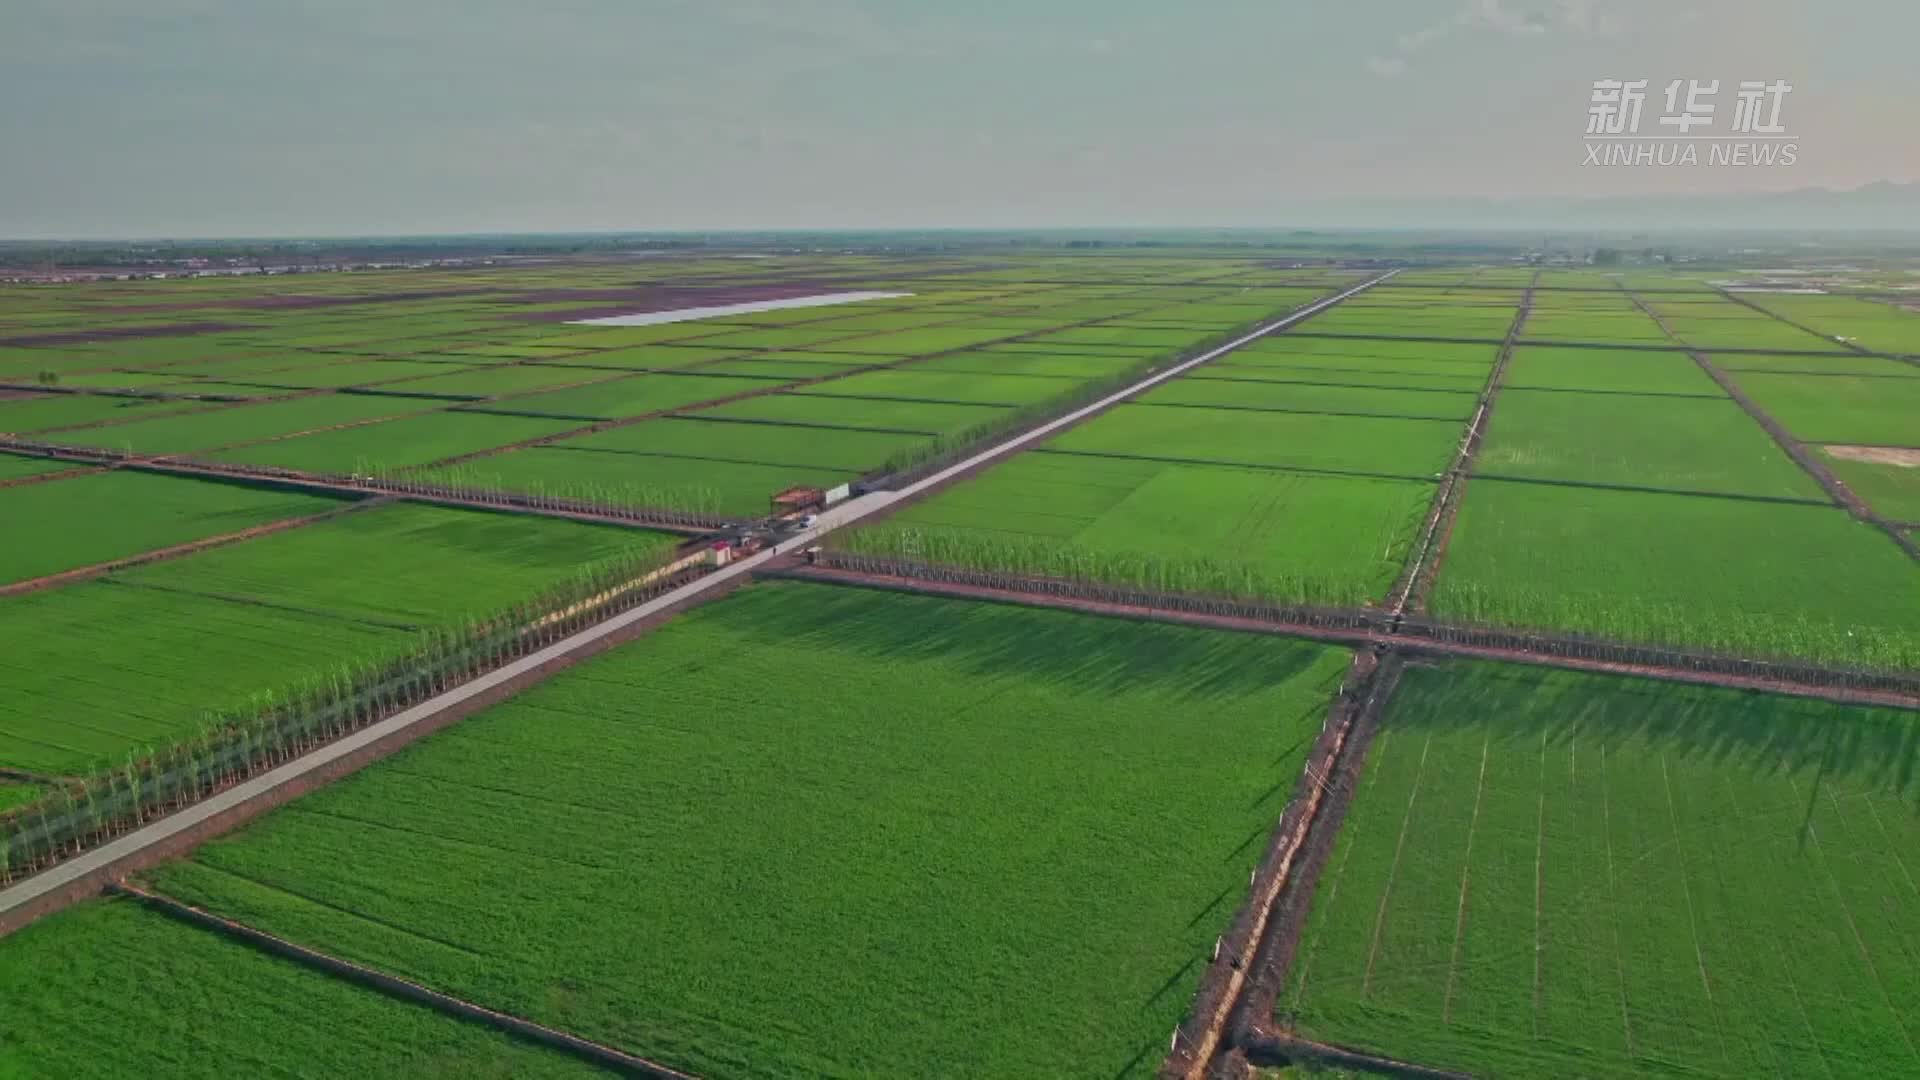 内蒙古已建成近5000万亩高标准农田